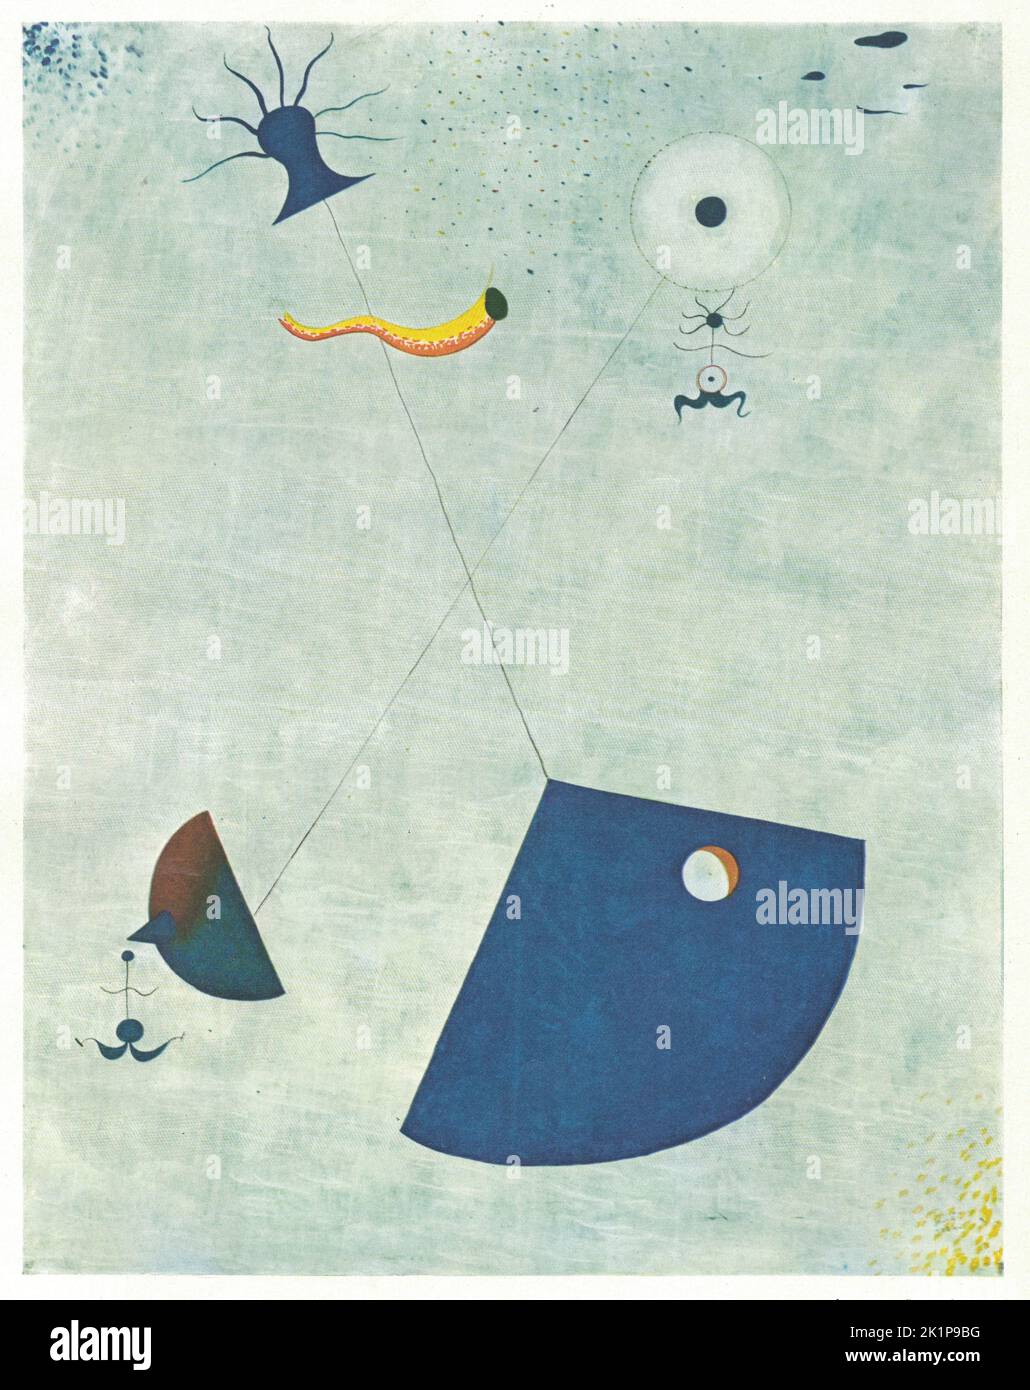 Maternité (maternità), 1924, olio su tela. Pittura di Joan Miró. Joan Miró (Barcellona, 20 aprile 1893 – Barcellona, 25 dicembre 1983) è stato un . Un museo dedicato alla sua opera, il Fundació Joan Miró, fu fondato nella sua città natale di Barcellona nel 1975, e un altro, il Fundació Pilar i Joan Miró, fu fondato nella sua città adottiva di Palma nel 1981. Guadagnandosi il plauso internazionale, il suo lavoro è stato interpretato come surrealismo ma con uno stile personale, a volte anche veering in Fauvism ed Expressionism. Fu notevole per il suo interesse per l'inconscio o Foto Stock